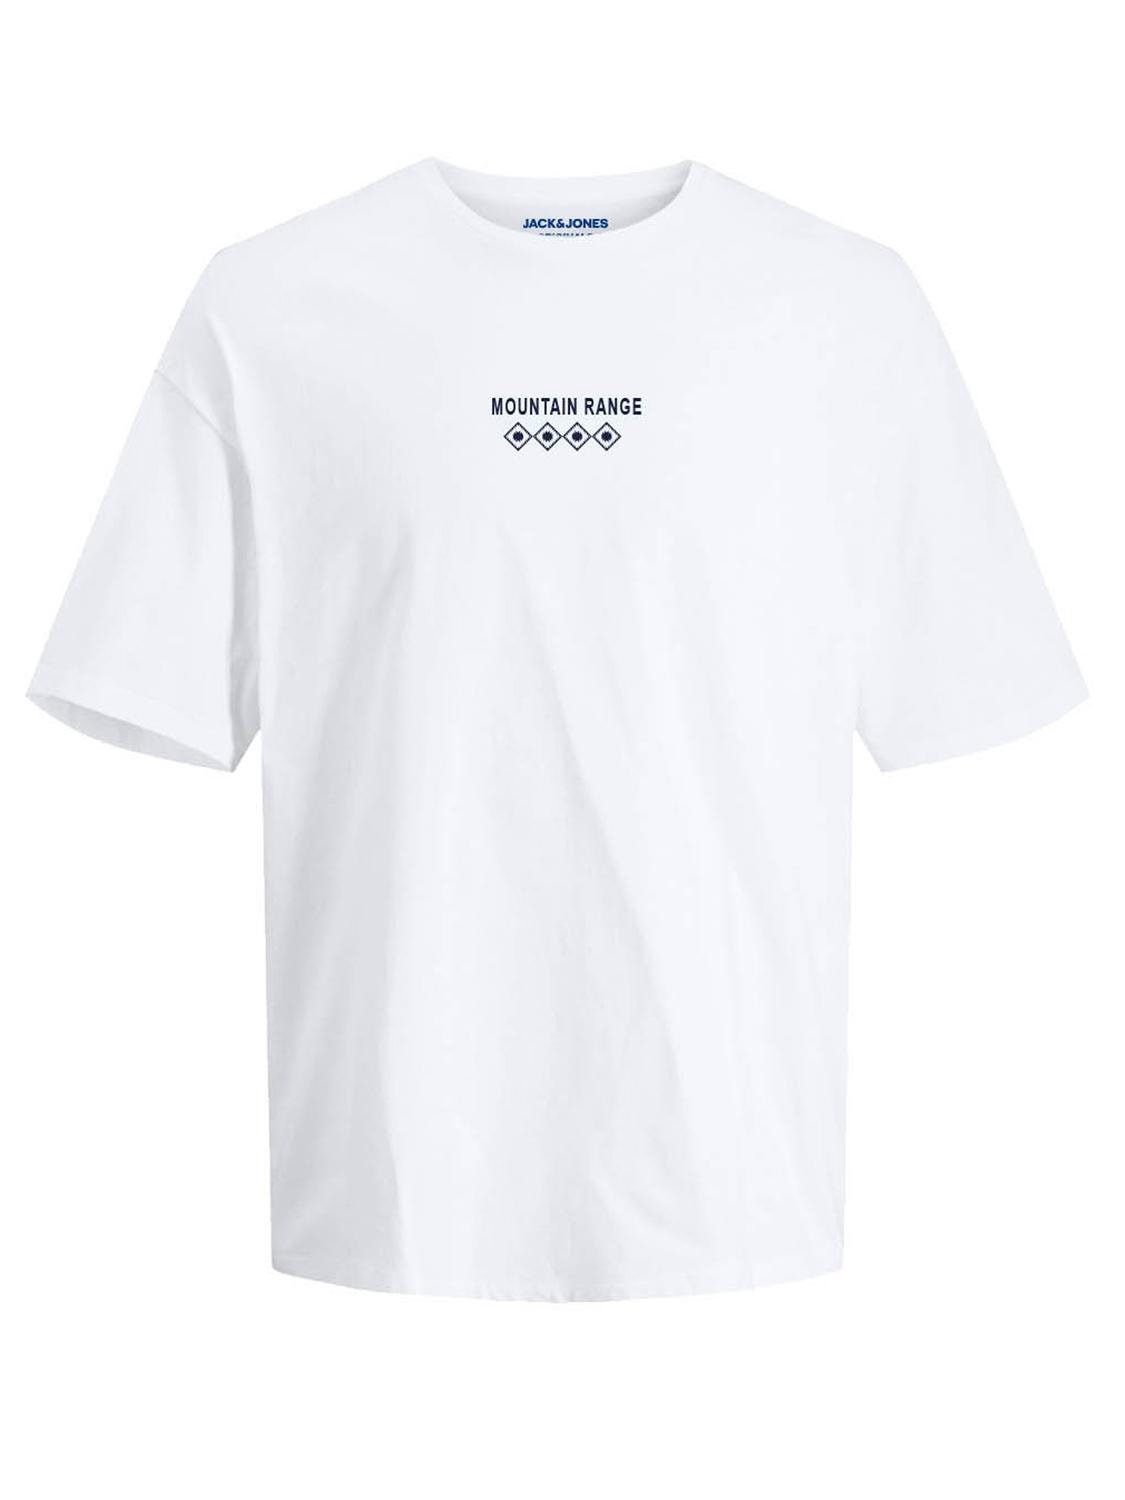 Jack & Jones Printed Round Neck T-shirt -Bright White - 12270781